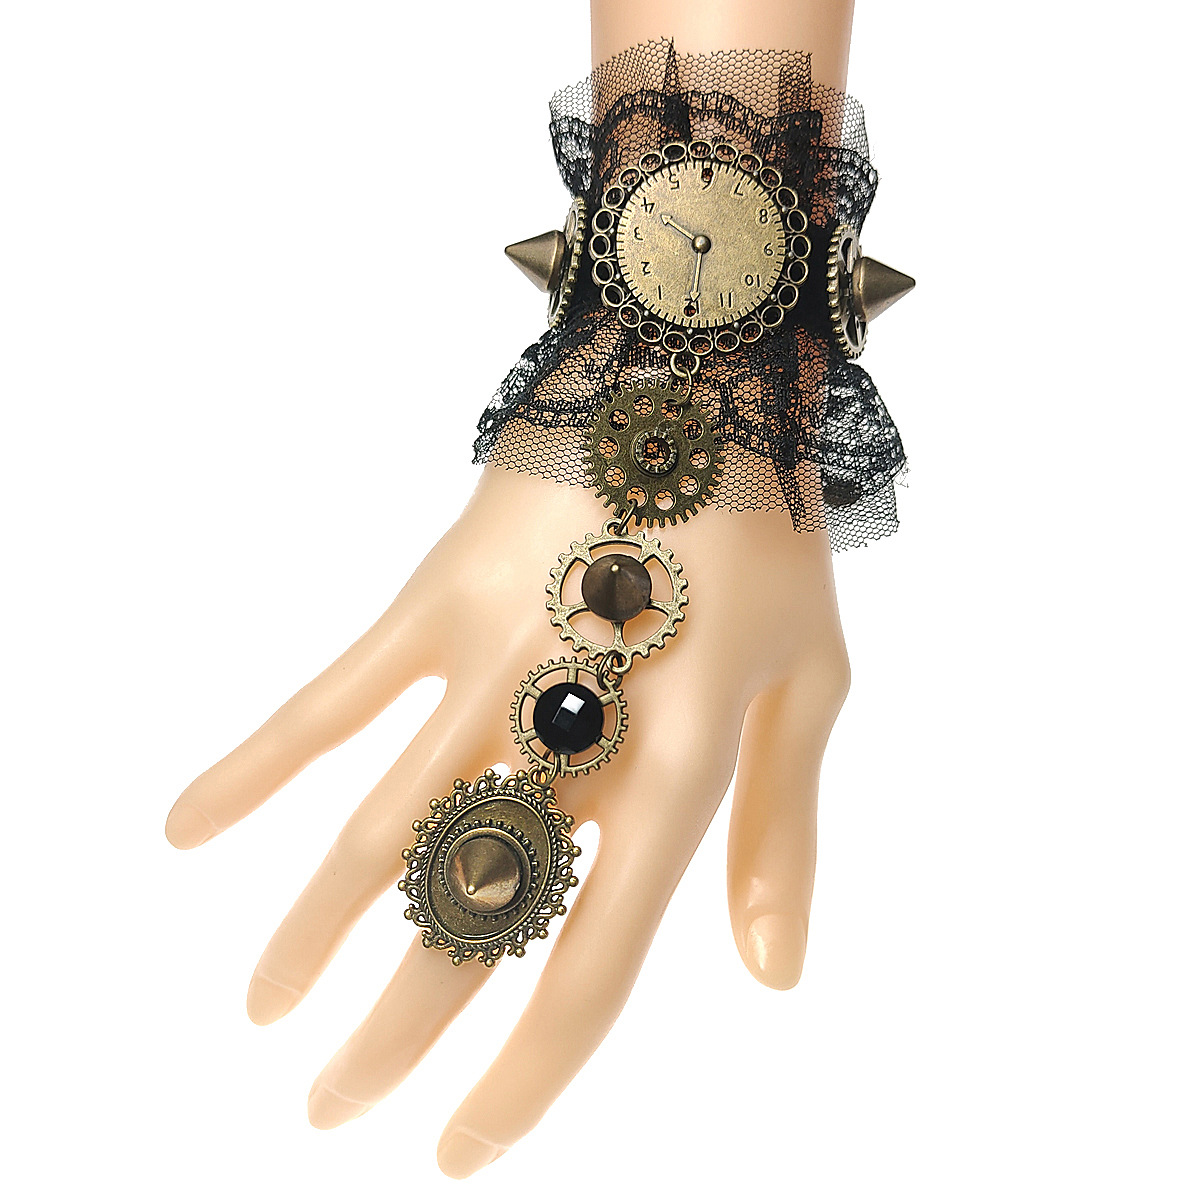 新品欧美蕾丝齿轮钟表手链戒指一体链 万圣节朋克铆钉手链 S412